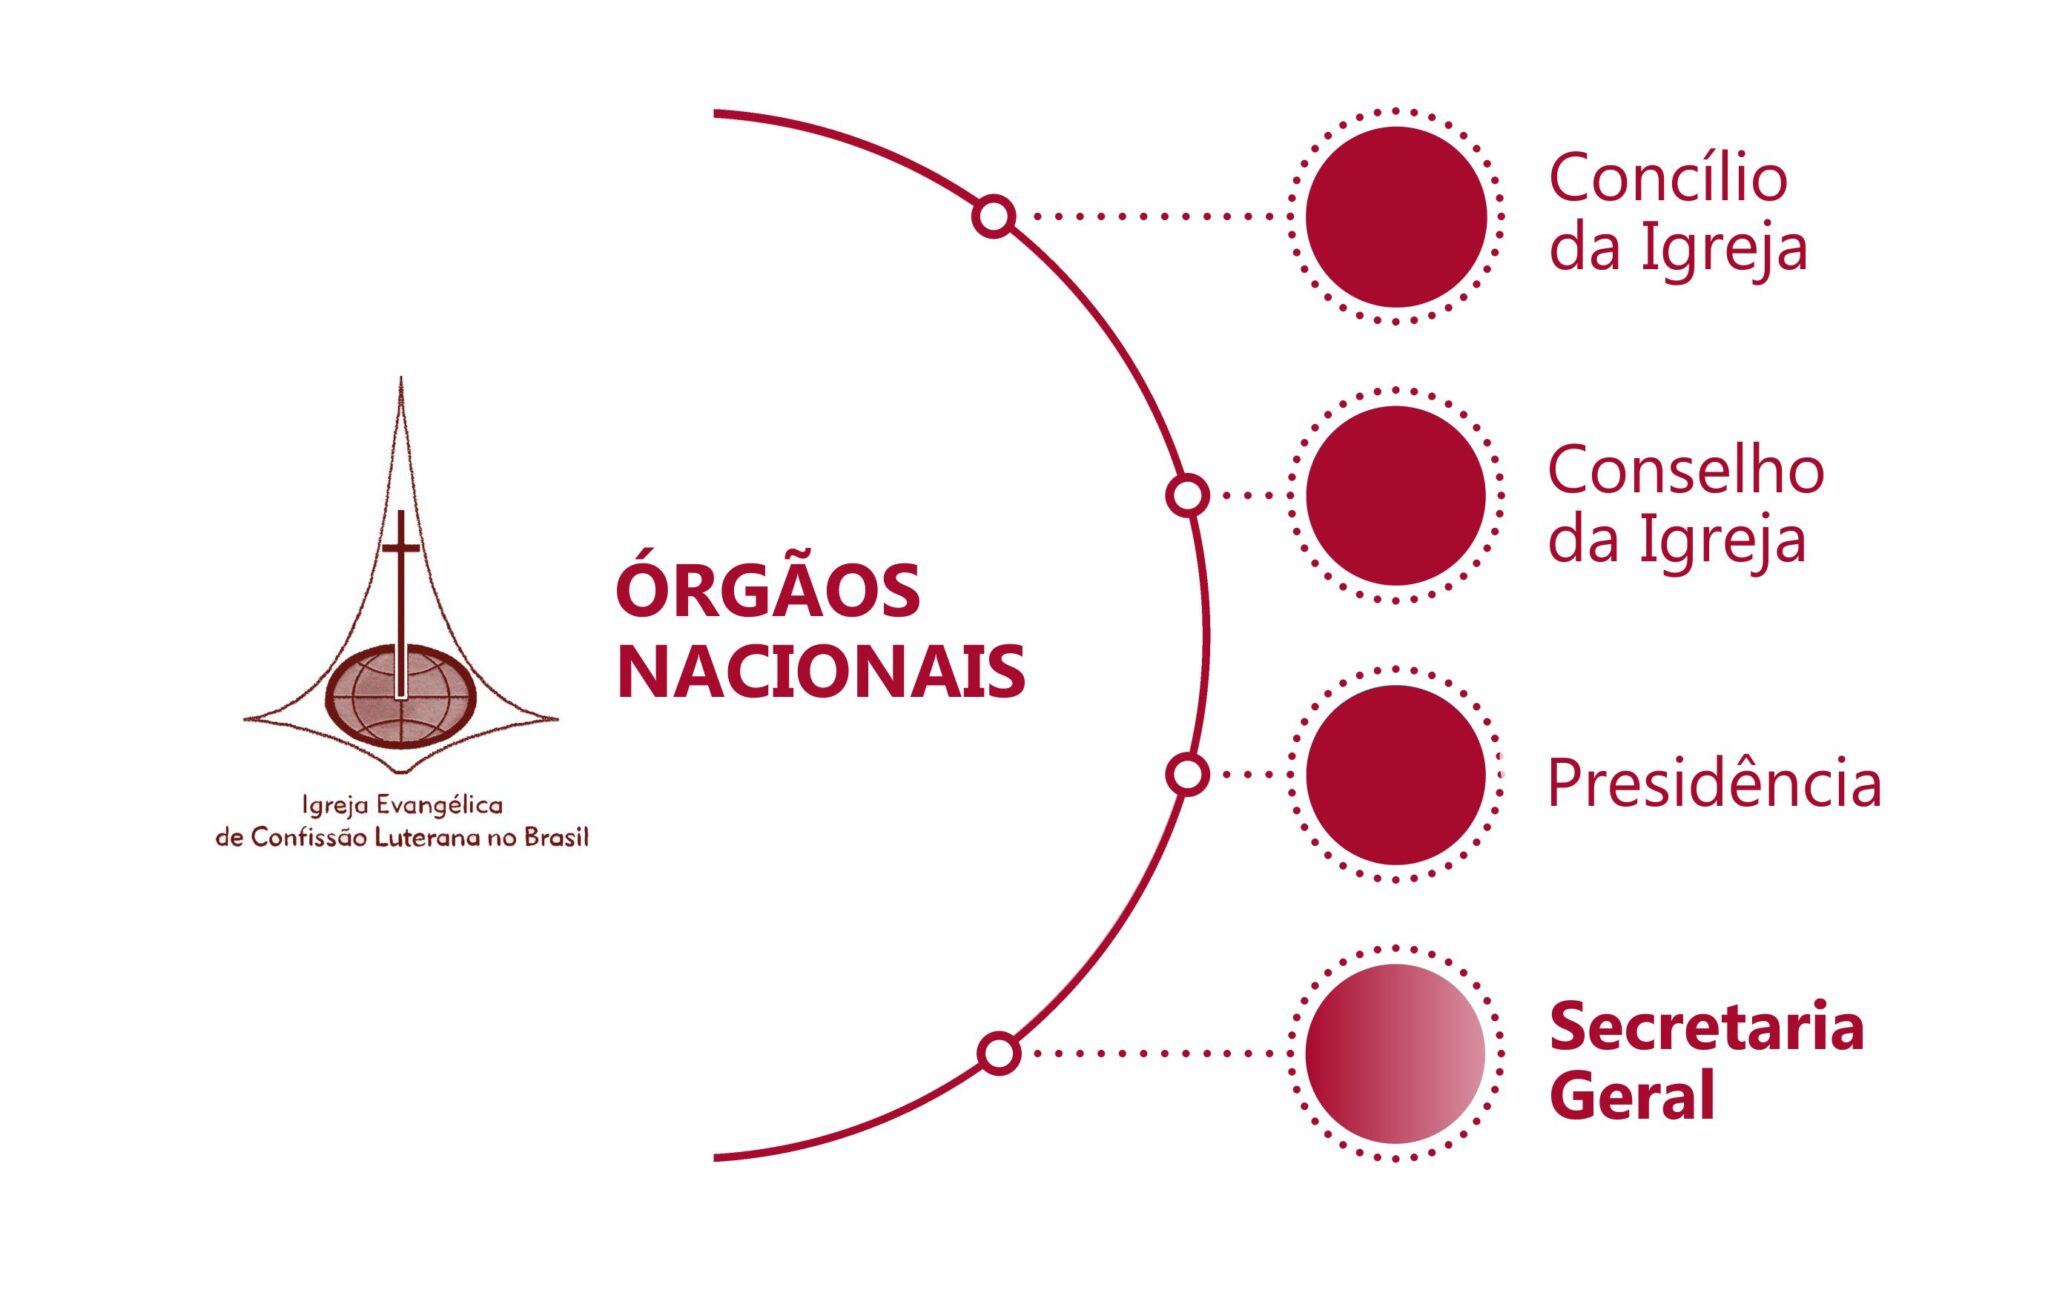 Quatros órgãos nacionais: "Concílio da igreja", "Conselho da igreja","Presidência", "Secretaria geral"